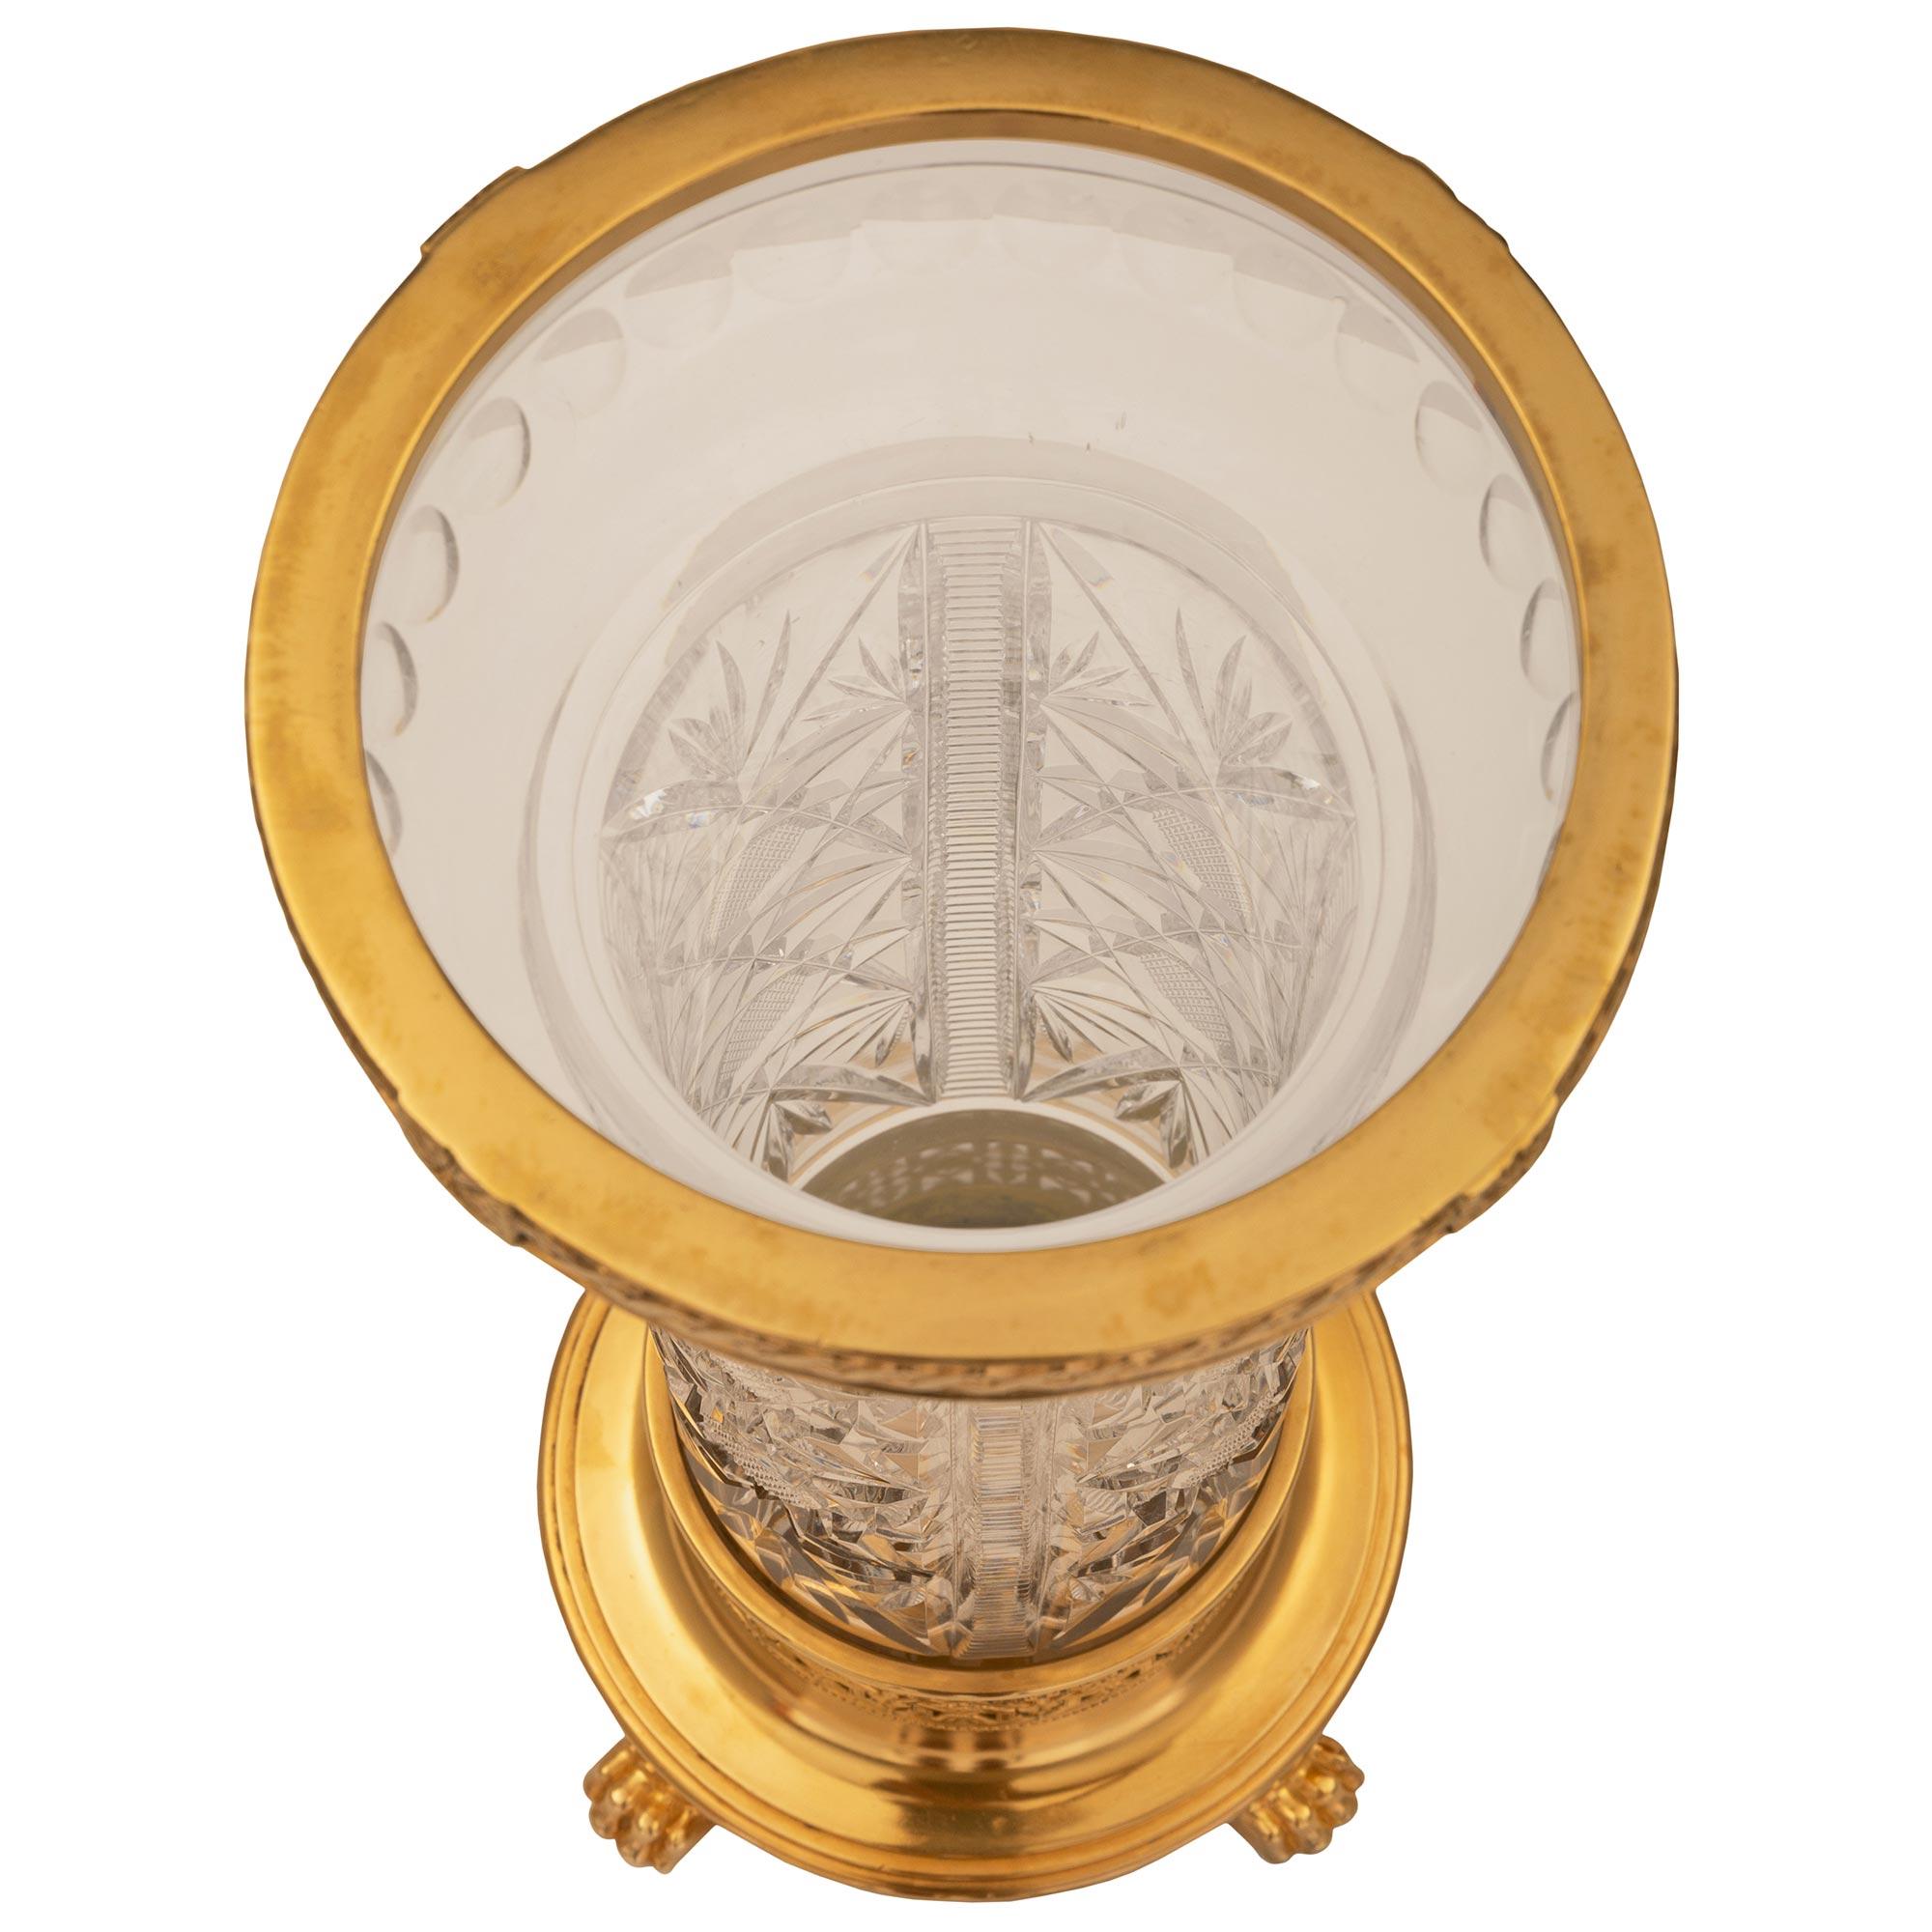 Exceptionnel vase en cristal de Baccarat et bronze doré. Baccarat en cristal et bronze doré. Le vase est surélevé par de jolis pieds en forme de pattes sous la base circulaire en bronze doré avec une fine bordure tachetée et de beaux motifs